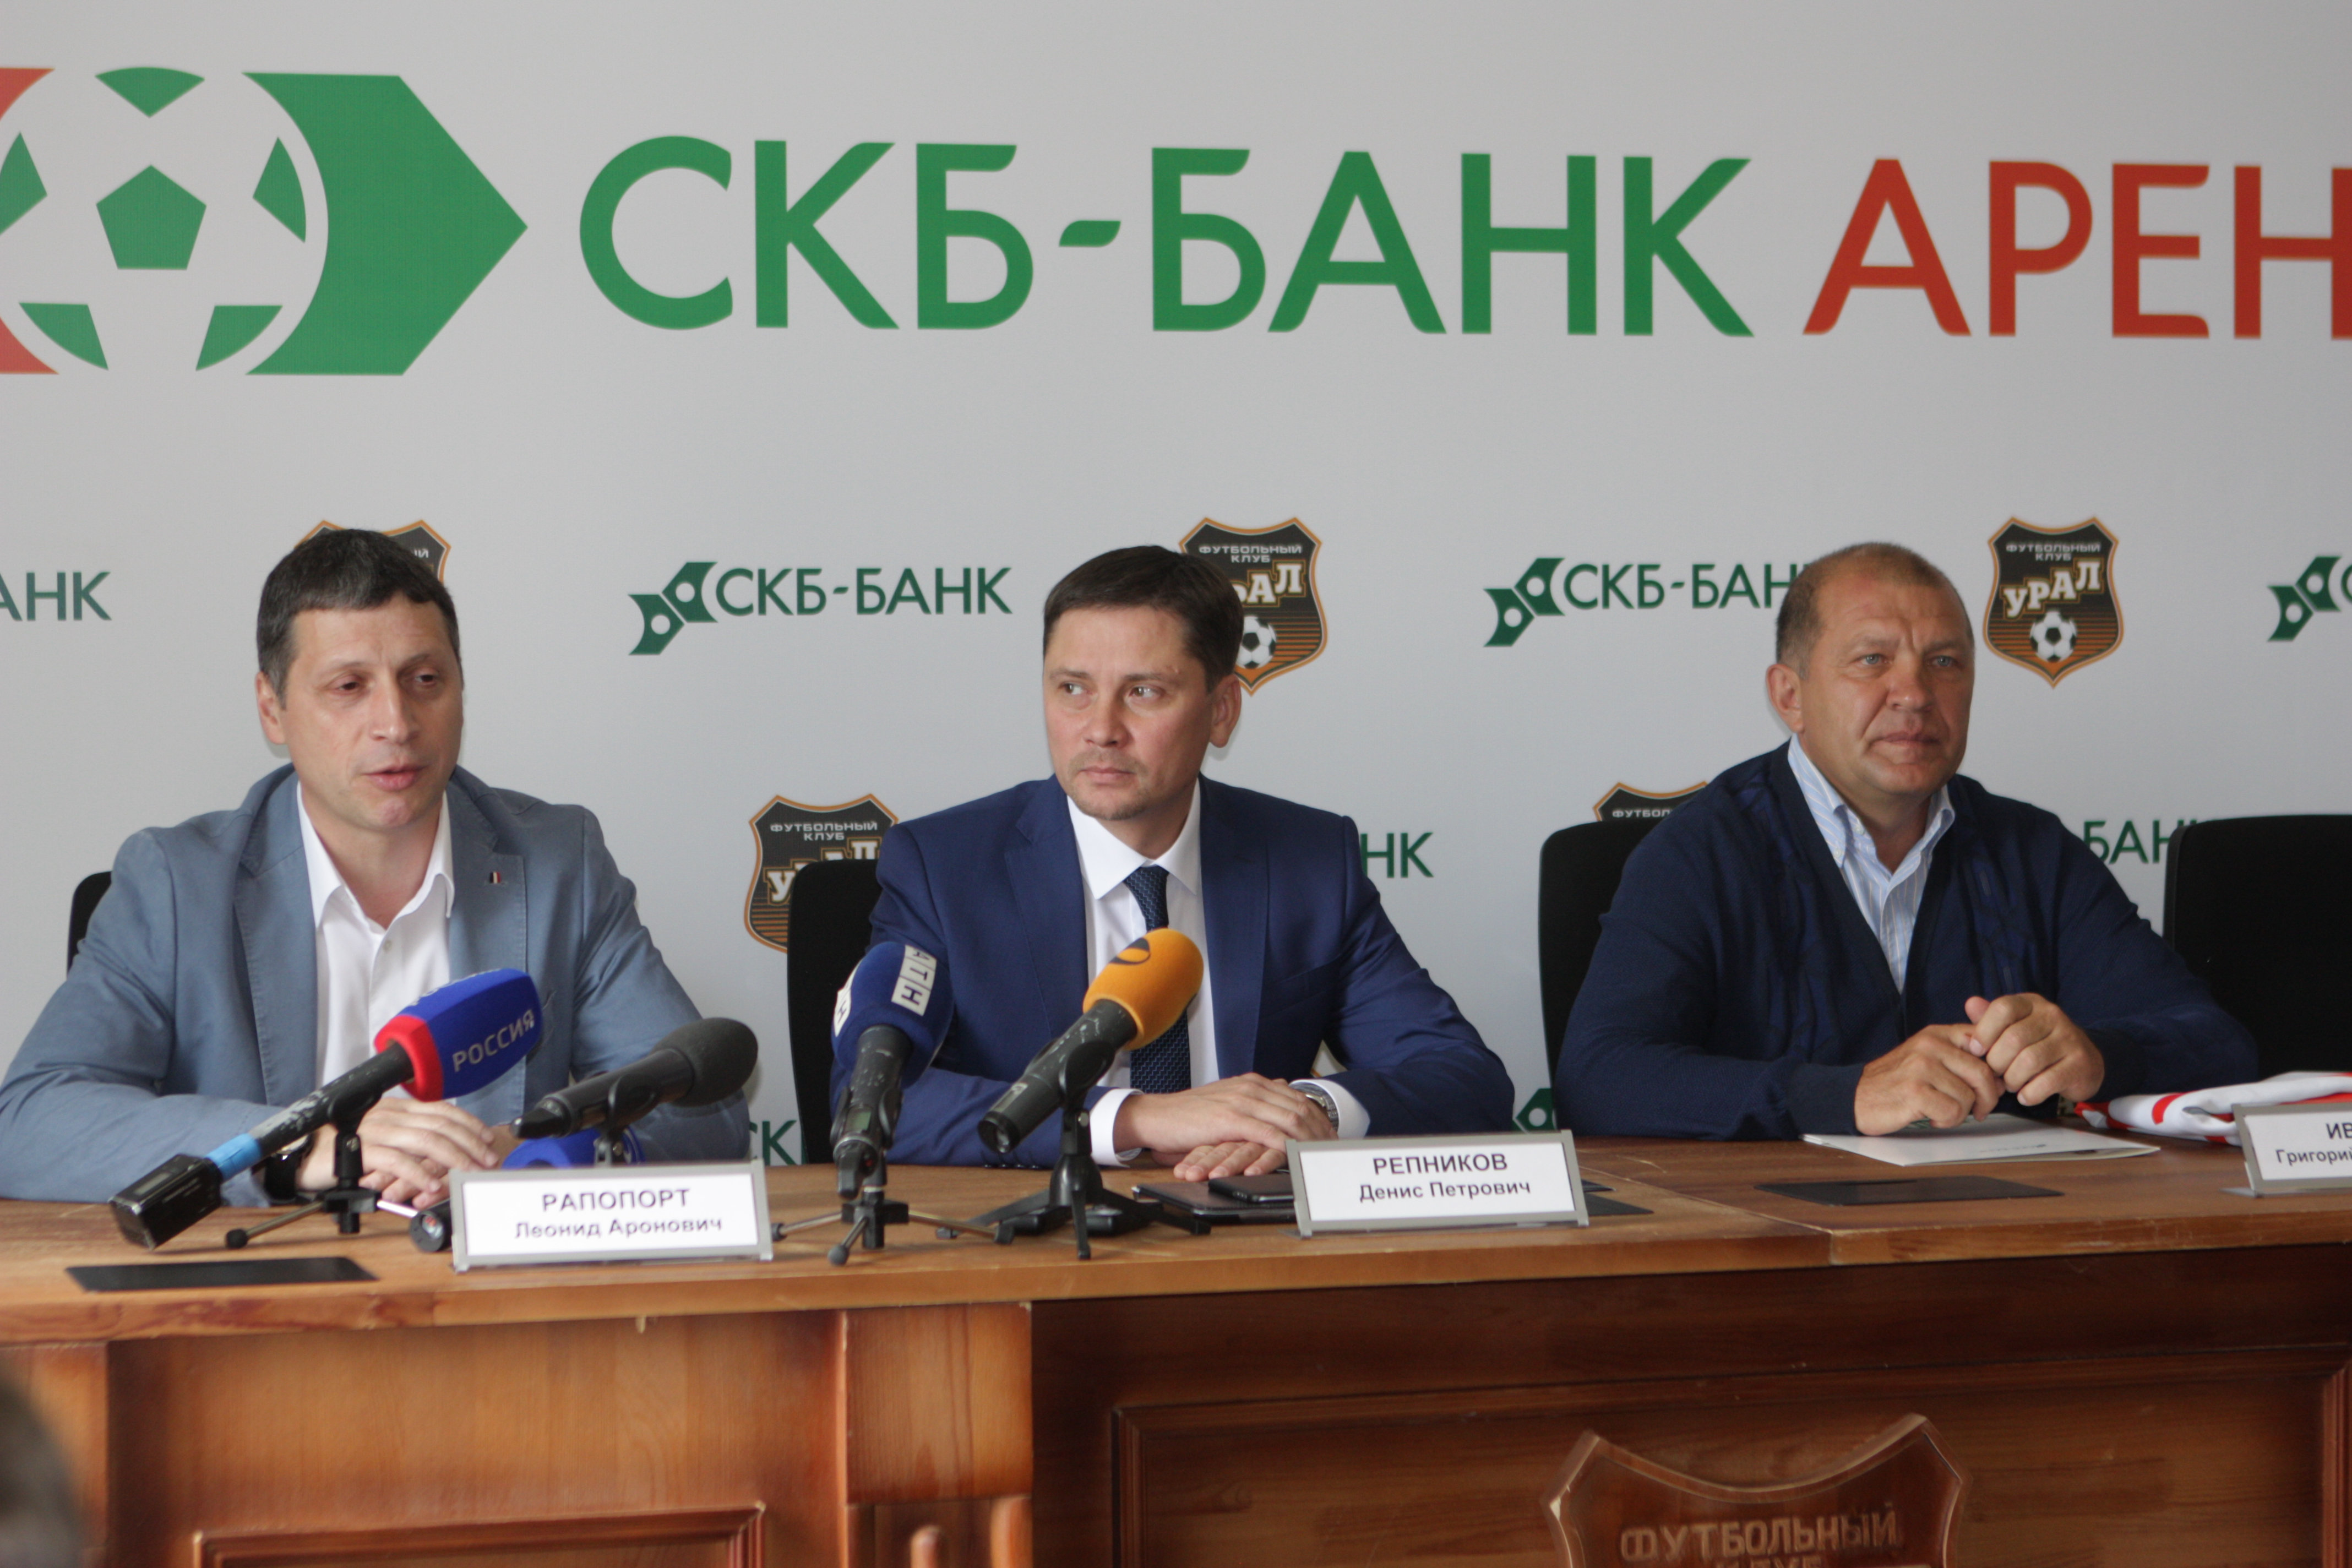 «СКБ-Банк Арена» станет домом для новой команды «Урал-2» - Фото 3